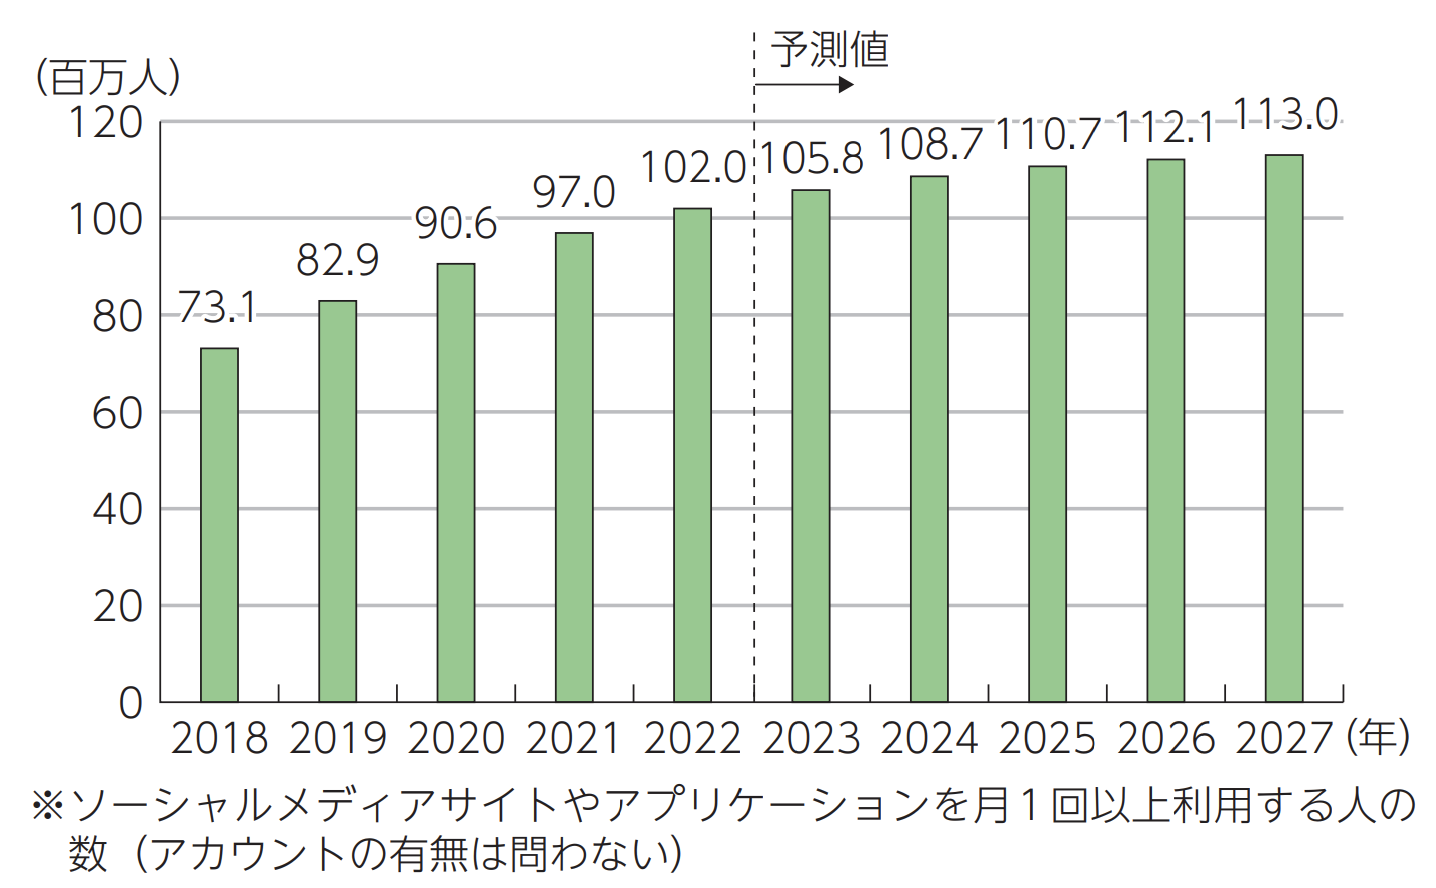 日本のソーシャルメディア利用者数の推移及び予測